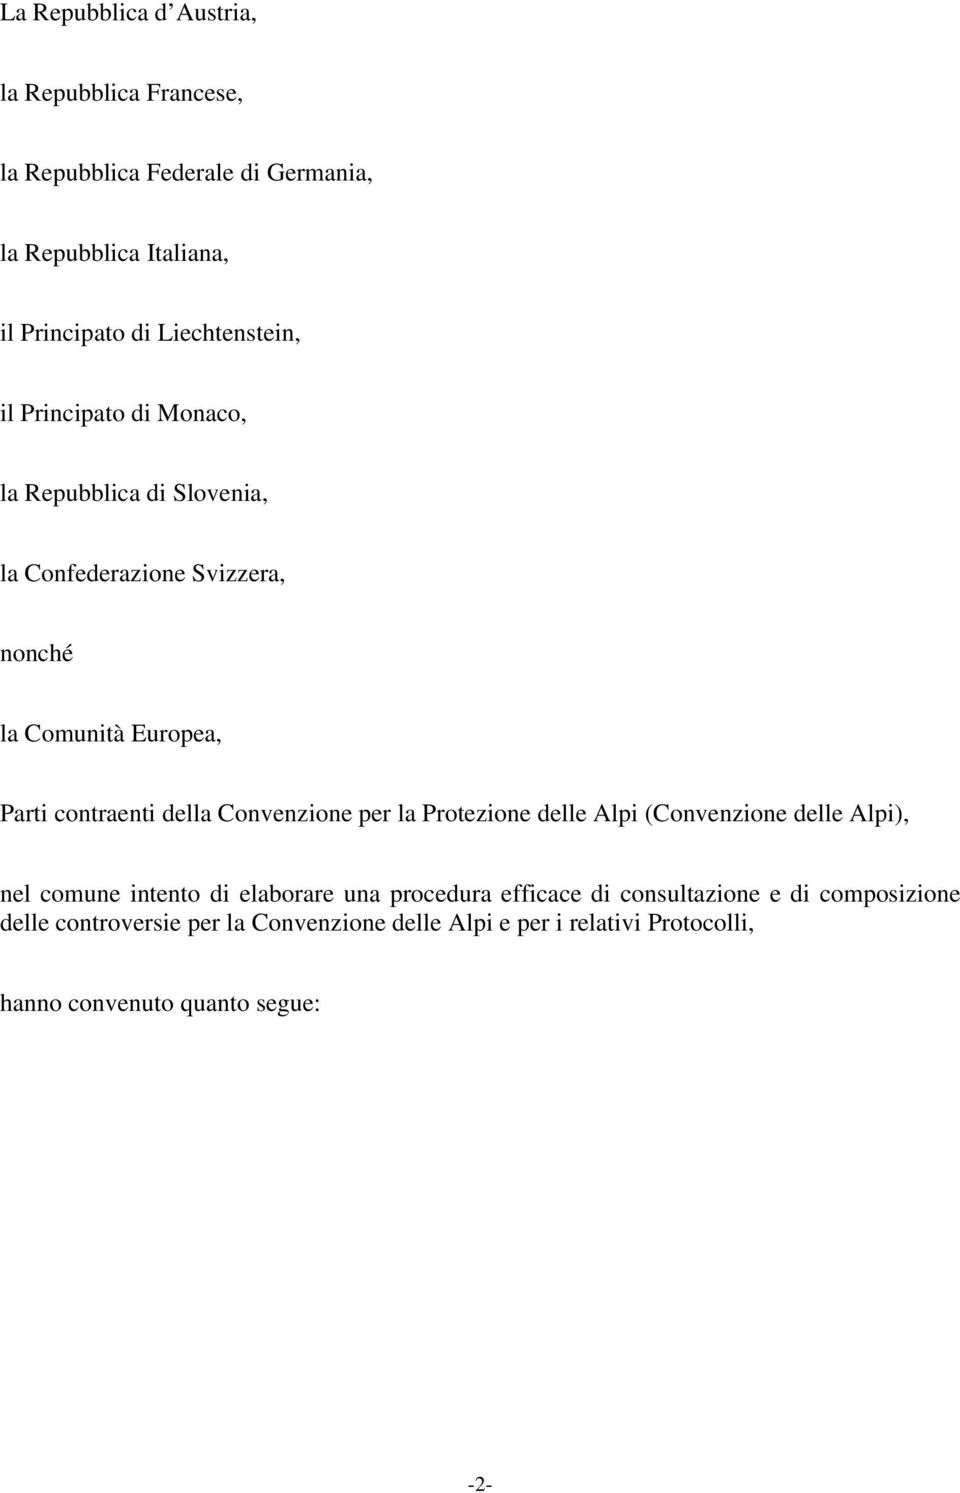 contraenti della Convenzione per la Protezione delle Alpi (Convenzione delle Alpi), nel comune intento di elaborare una procedura